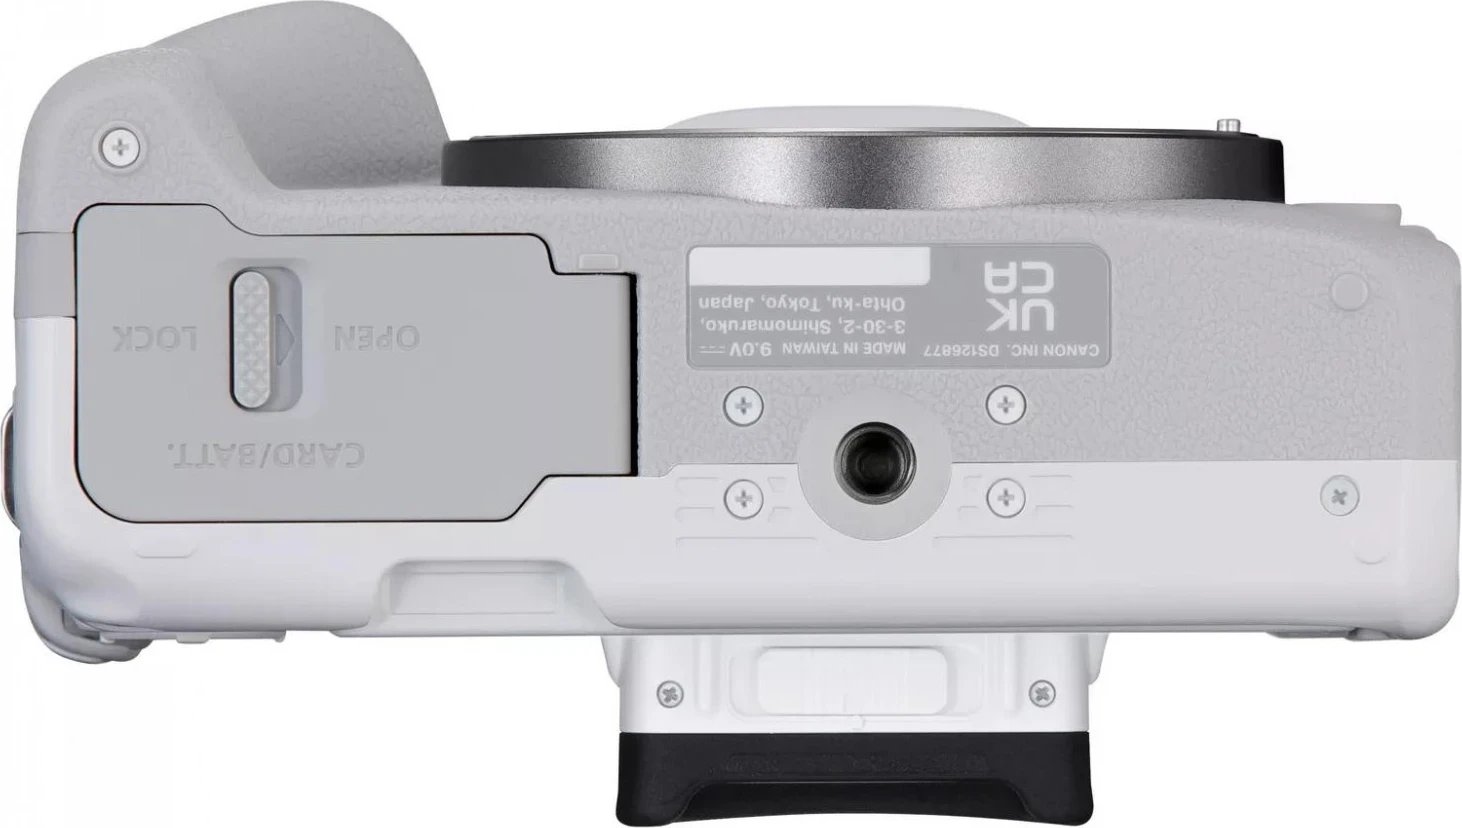 Kamerë Canon EOS R50, me objektiv RF-S 18-45mm, F4.5-6.3 IS STM, e bardhë